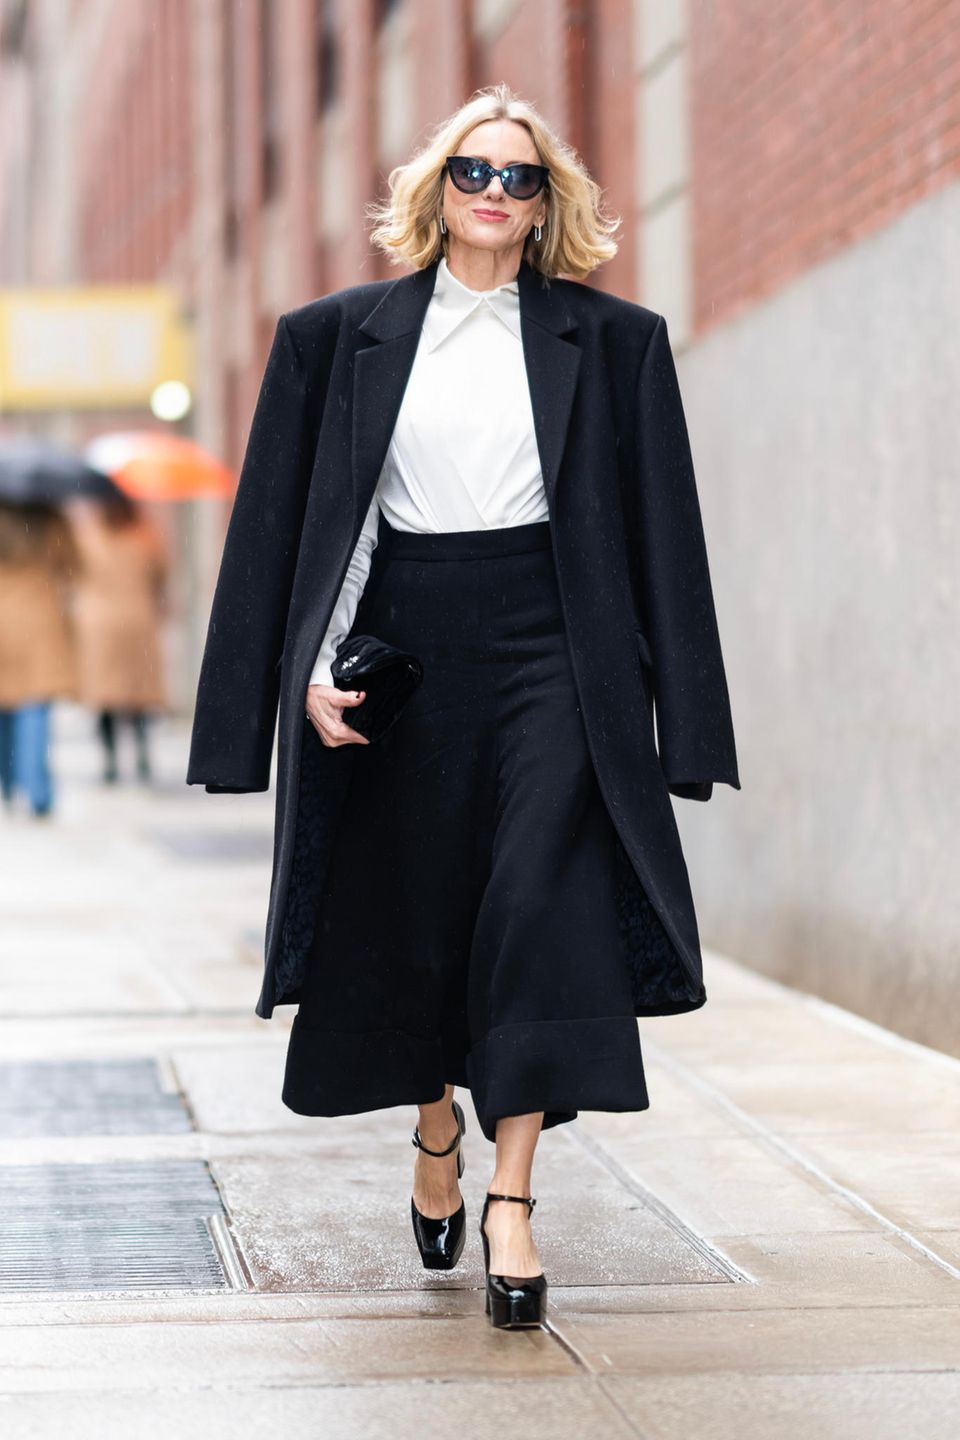 Pure Eleganz! In diesem klassischen Schwarz-Weiß-Look stolziert Schauspielerin Naomi Watts durch die Straßen von New York. Sie trägt eine schwarze Culotte-Hose, eine weiße Bluse und glänzende Plateau-Pumps. Stilbewusst wirft sie ihren schwarzen Mantel über ihre Schultern und rundet ihr Outfit mit einer großen Sonnenbrille sowie silbernen Ohrringen ab. Klassisch, elegant und ultra cool: Naomi trägt den Go-To-Look fürs Büro.